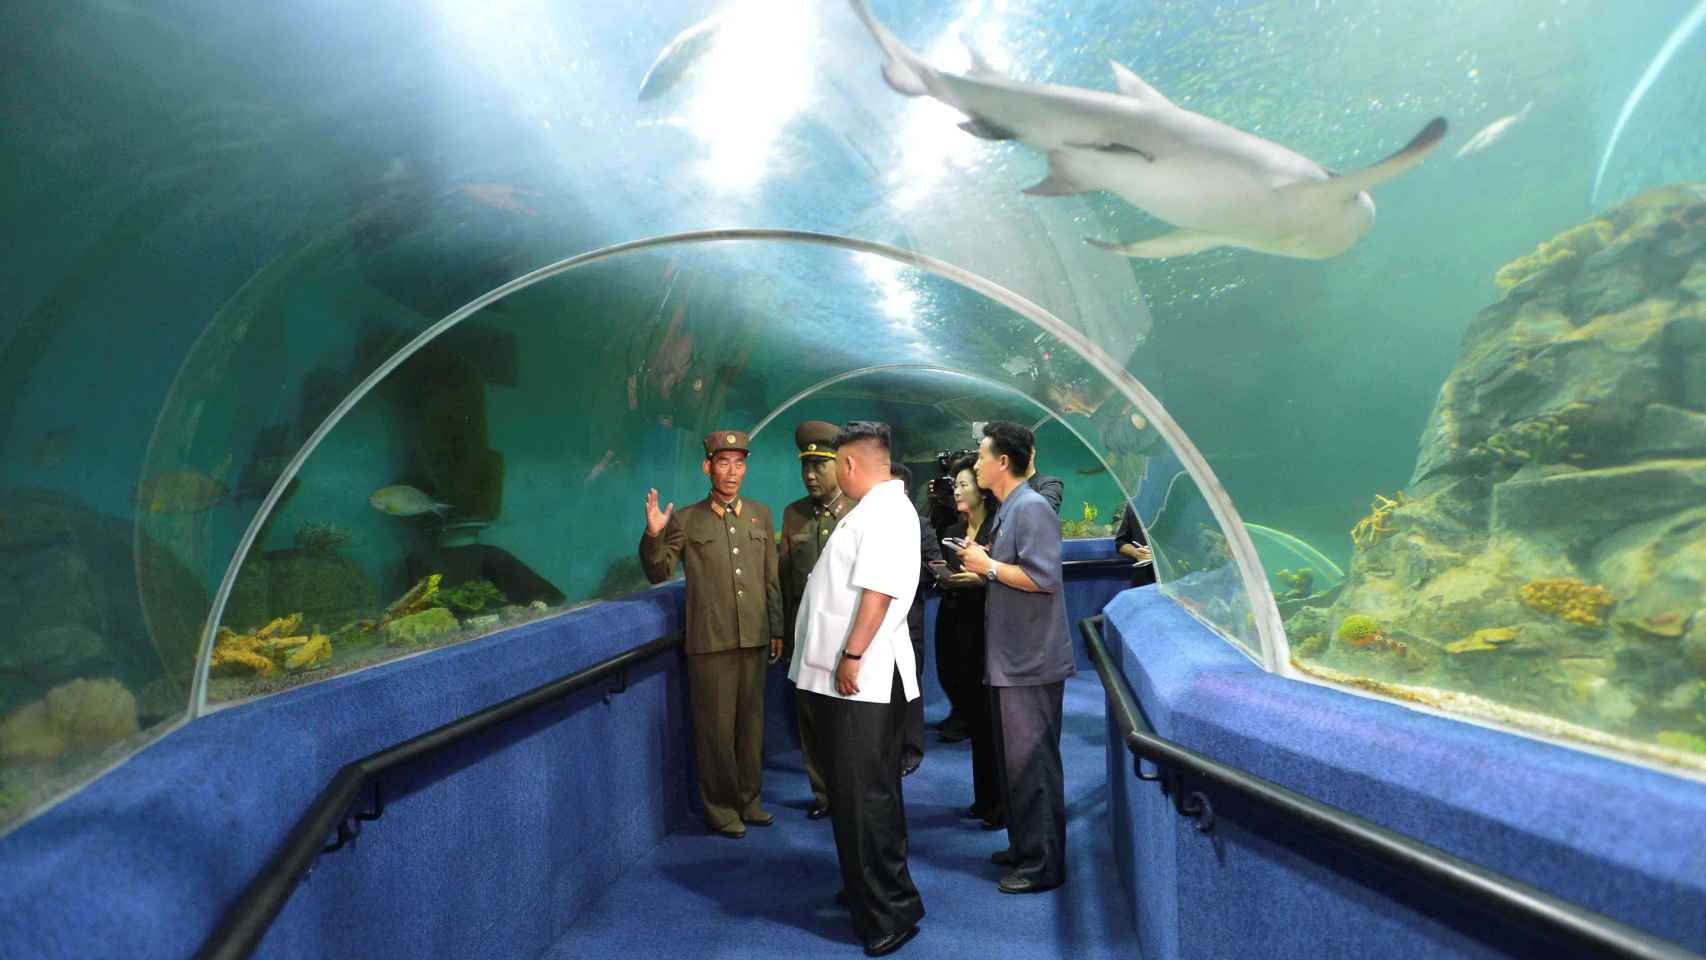 Kim Jong-un visita un aquarium, una de las atracciones turísticas